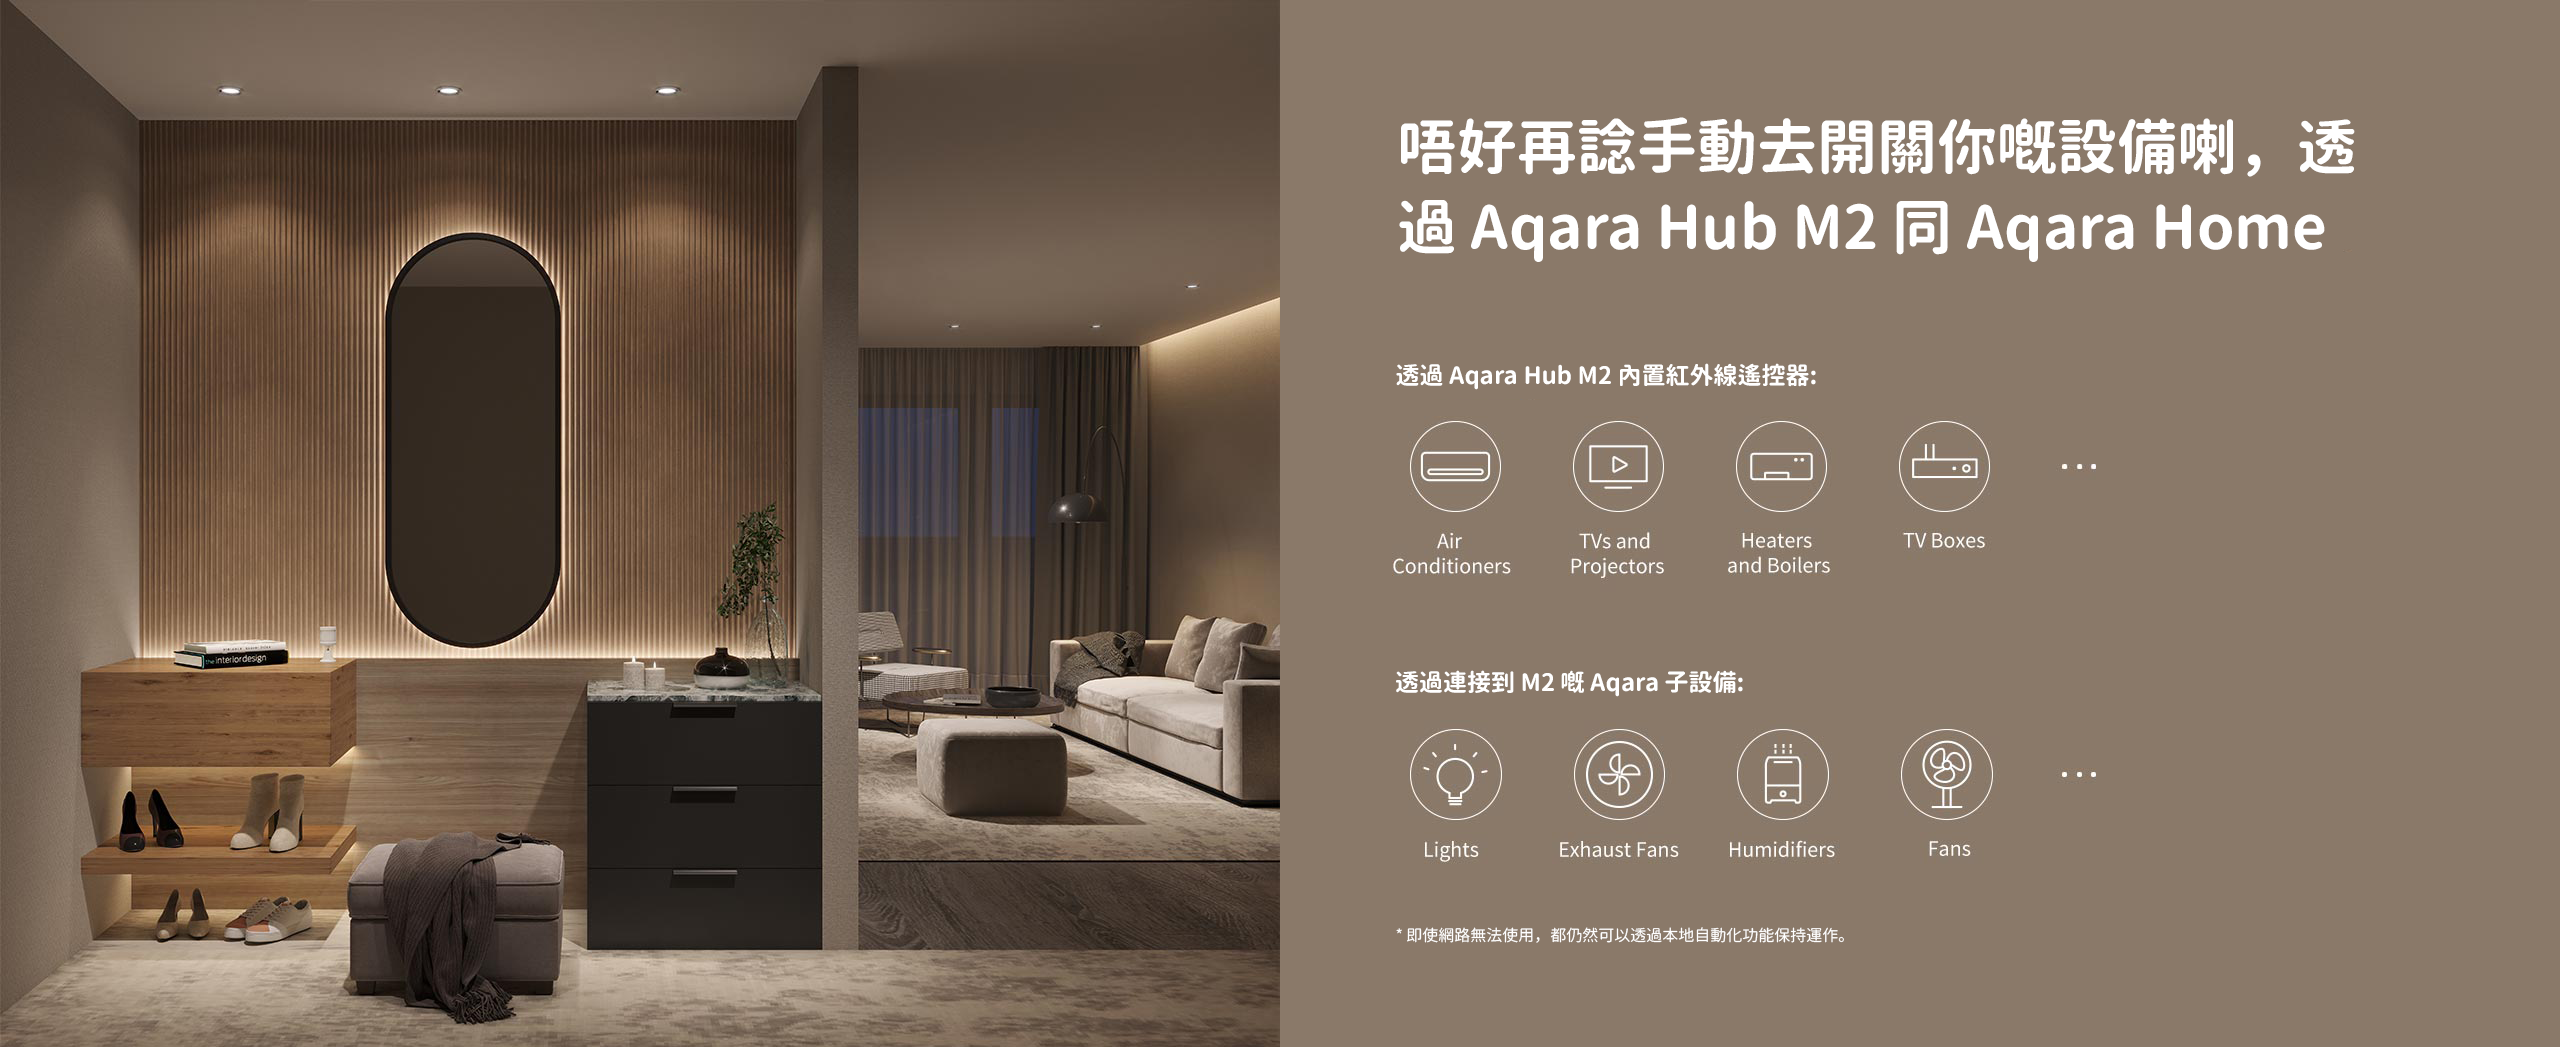 唔好再諗手動去開關你嘅設備喇，透過 Aqara Hub M2 同 Aqara Home app 自動化來處理。